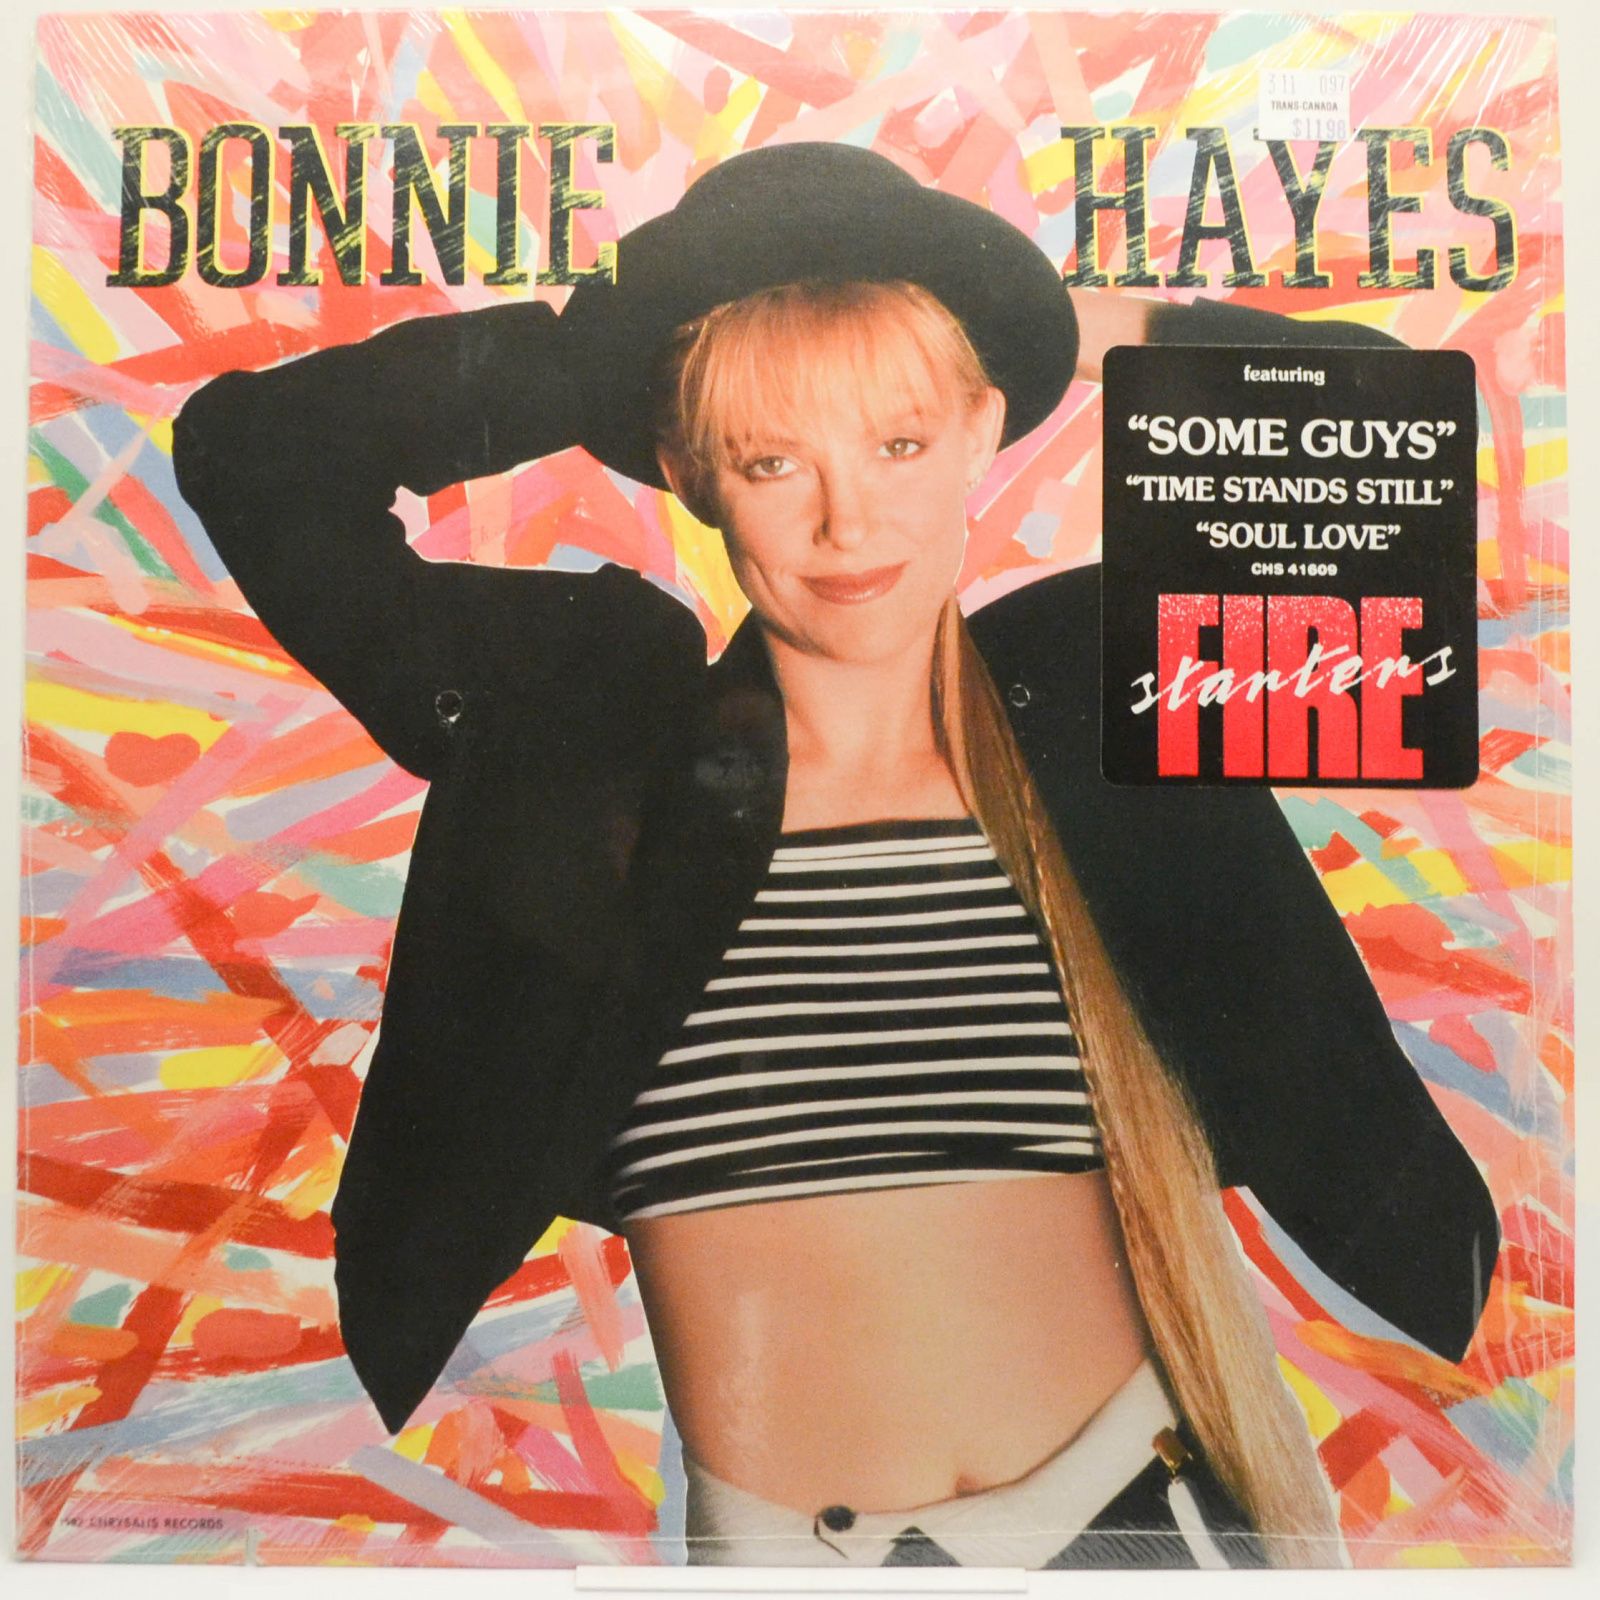 Bonnie Hayes — Bonnie Hayes, 1987